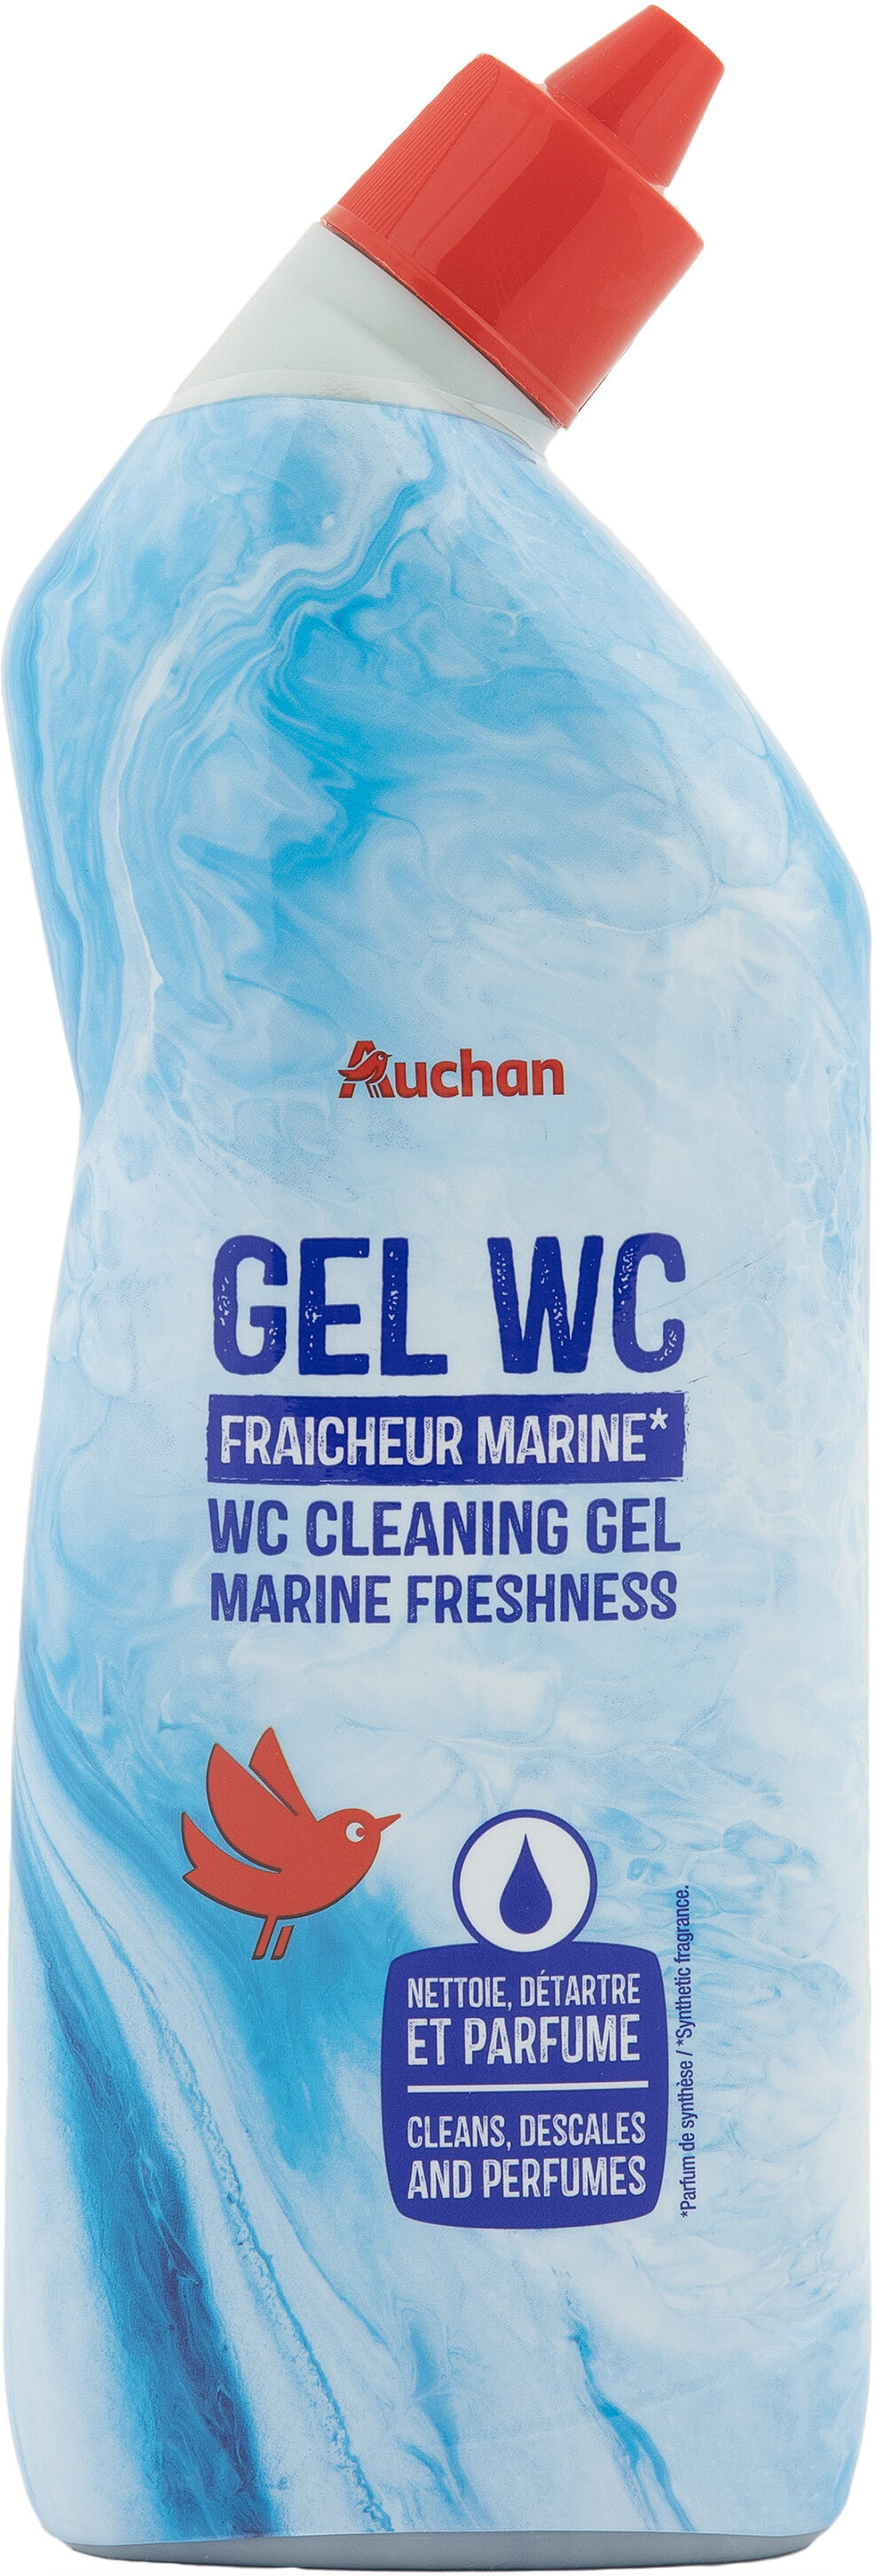 Auchan gel nettoyant wc fraicheur marine 750ml - Product - fr